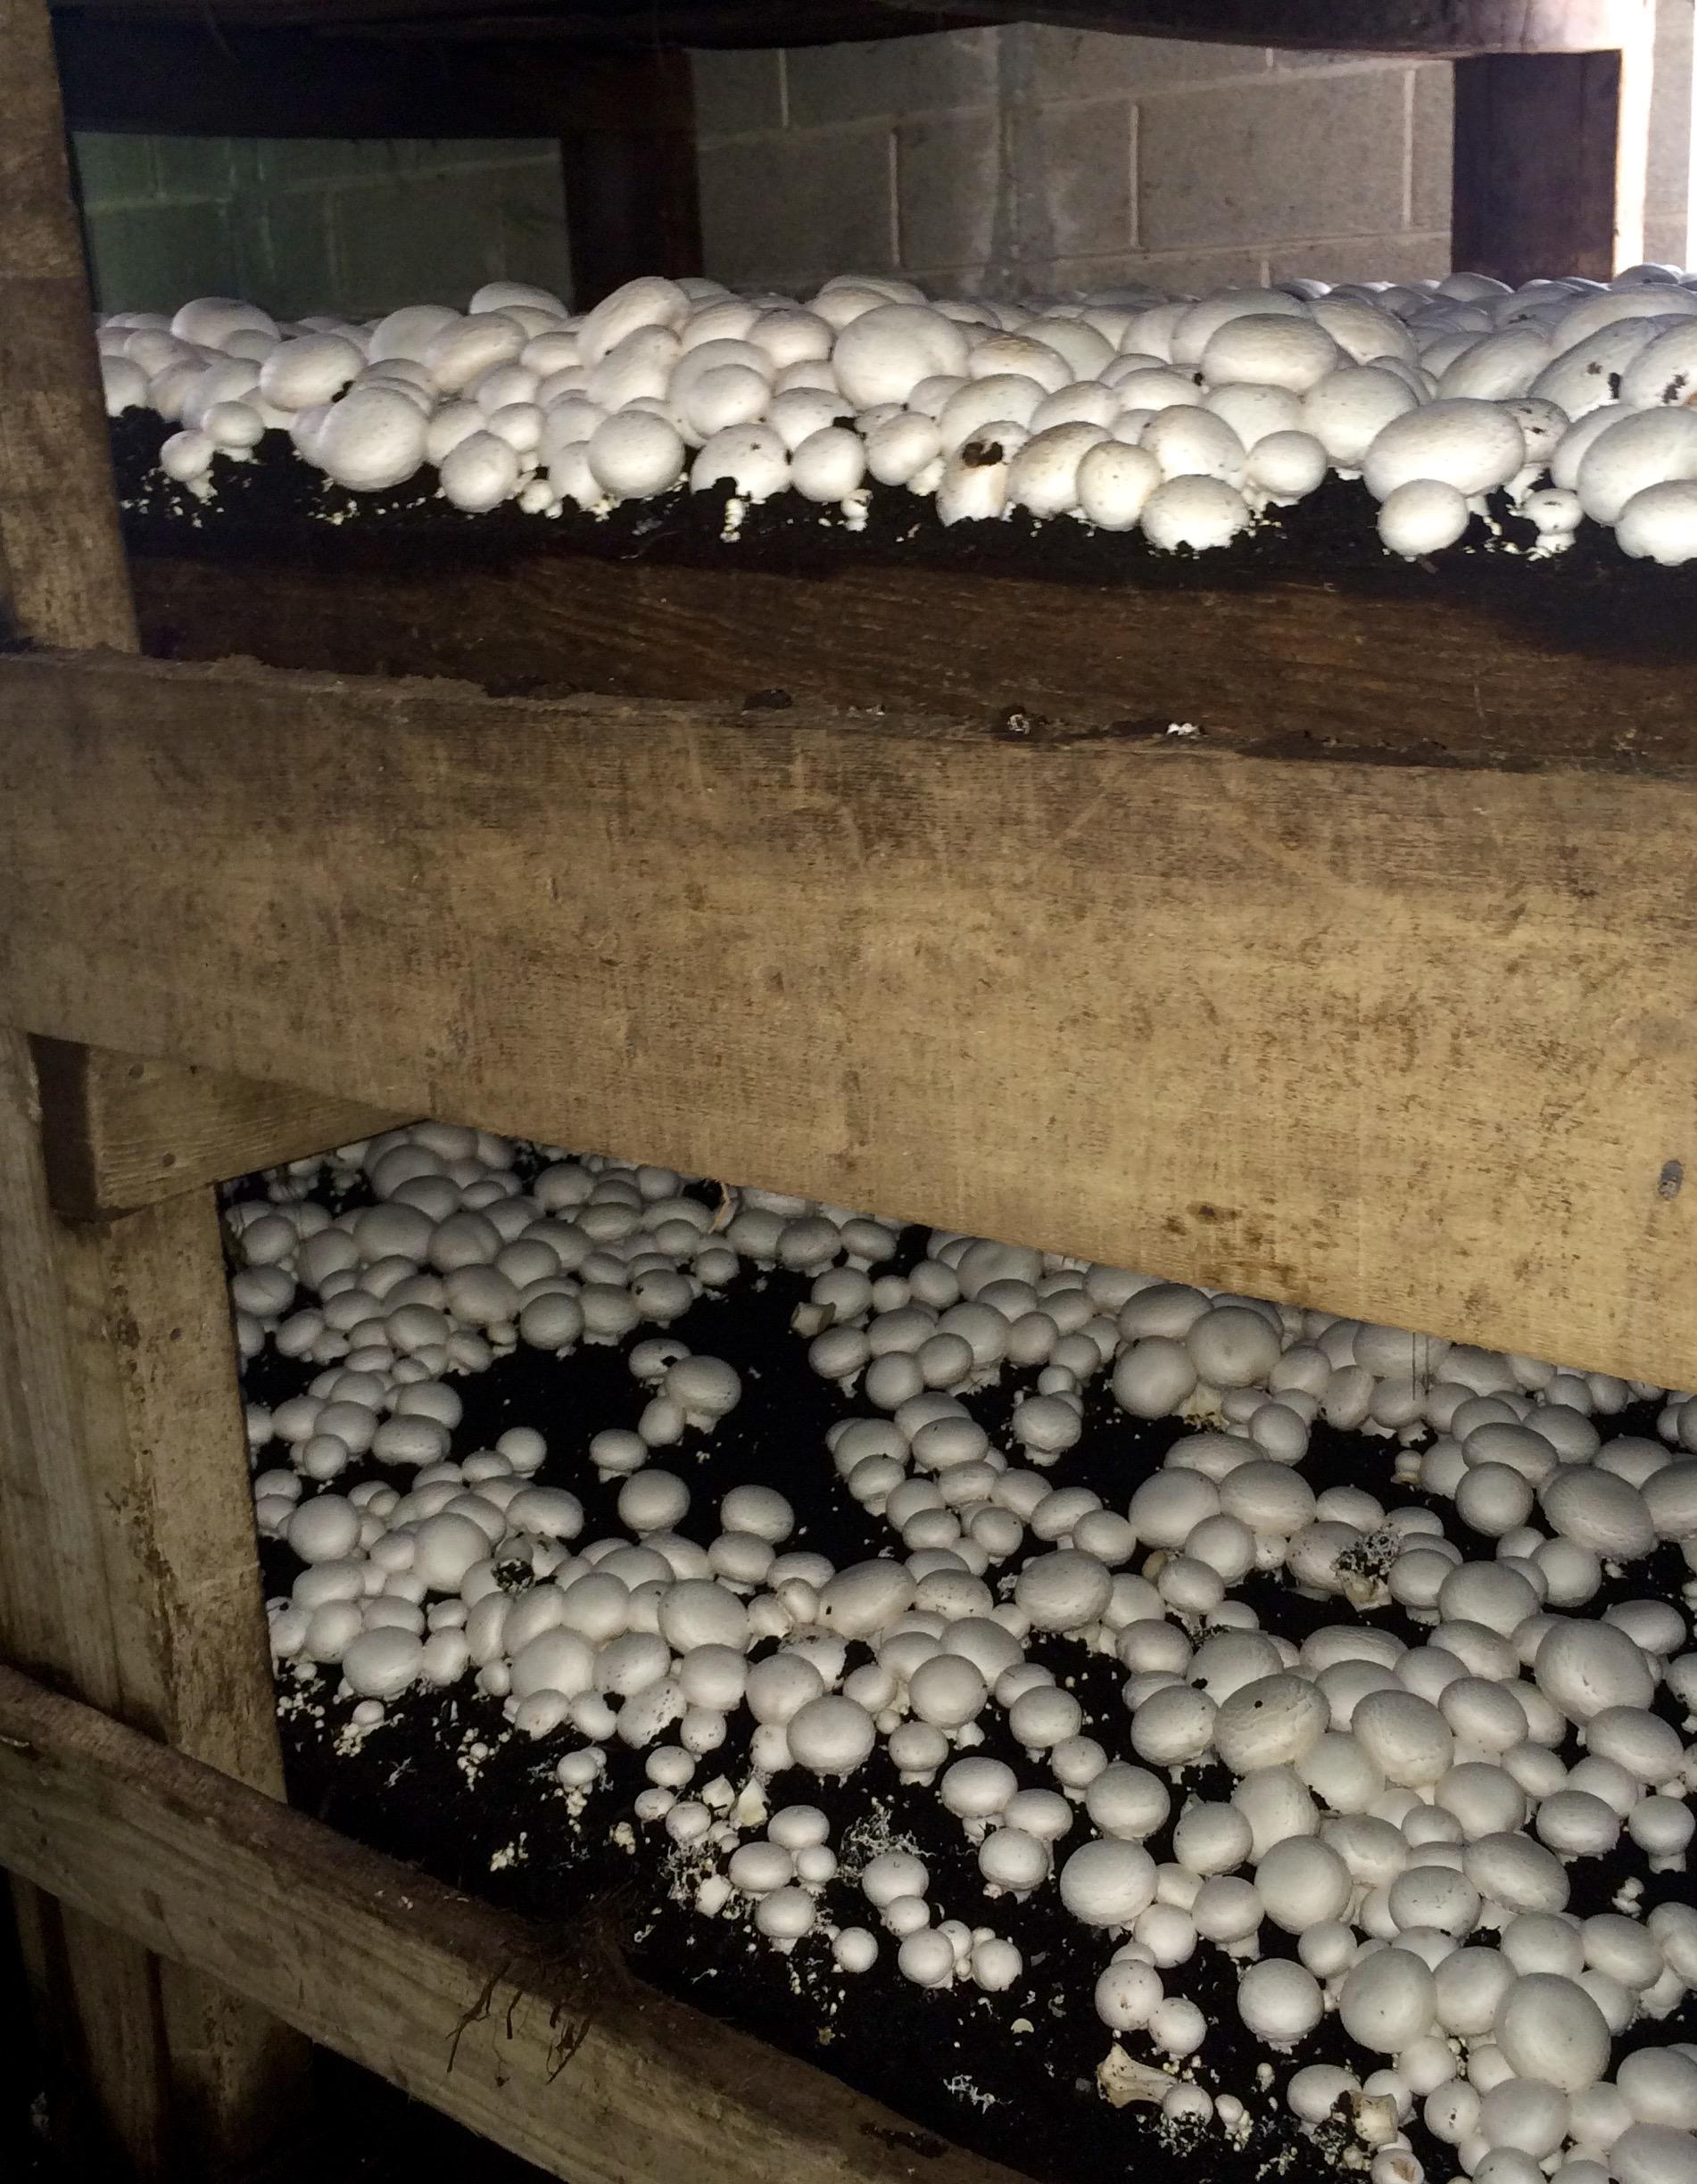 Hockessin mushroom farming family's roots run deep | Delaware First Media